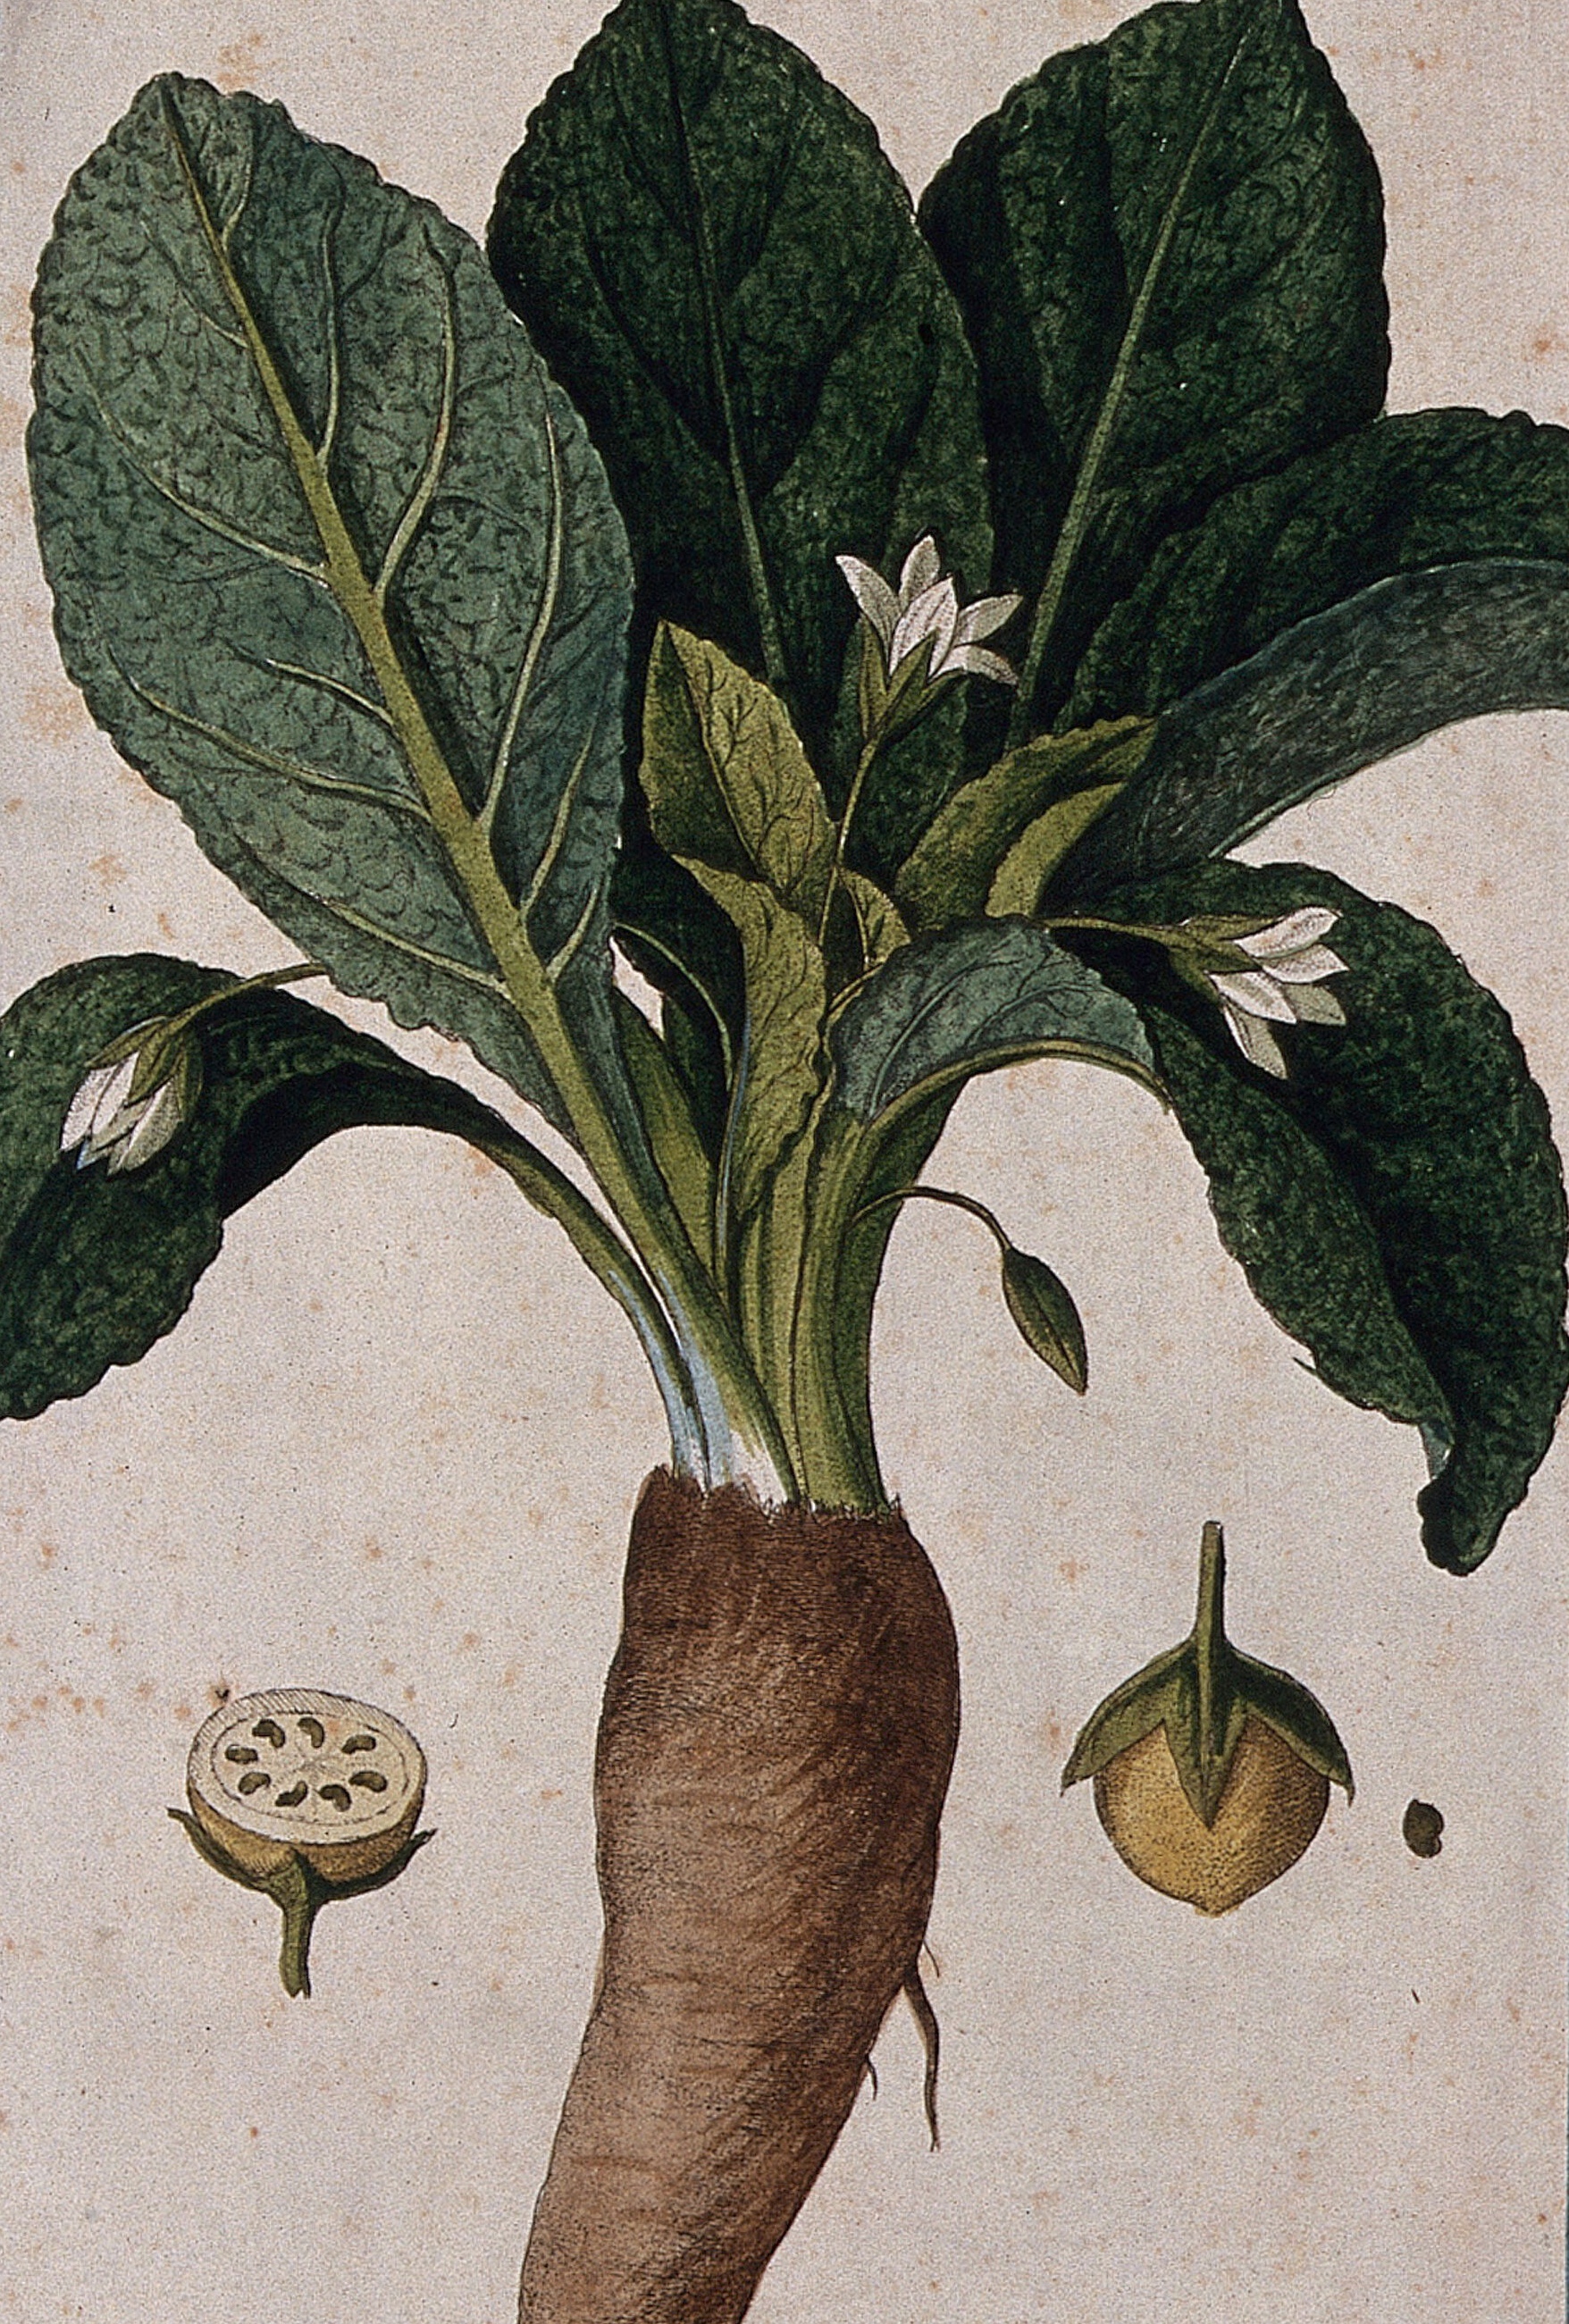 botanical illustration of mandrake